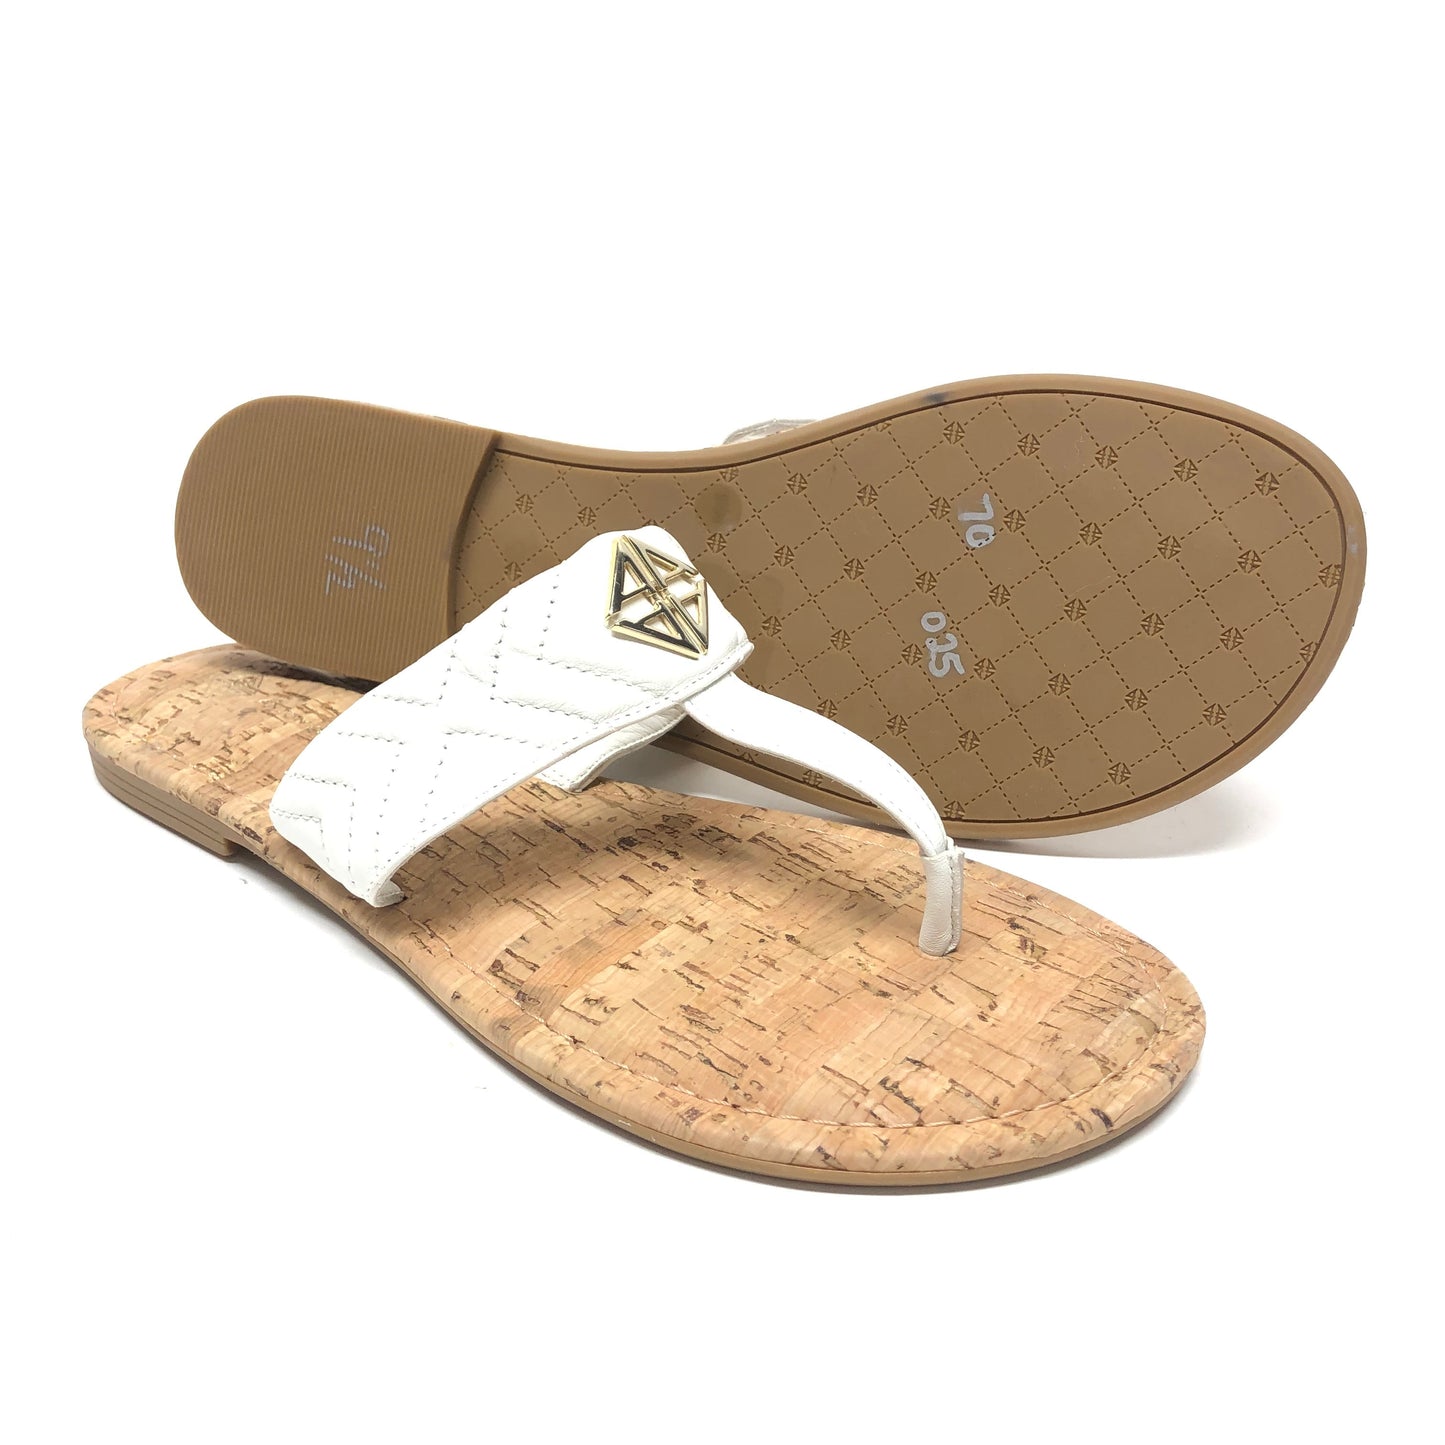 Ivory Sandals Flats Antonio Melani, Size 9.5